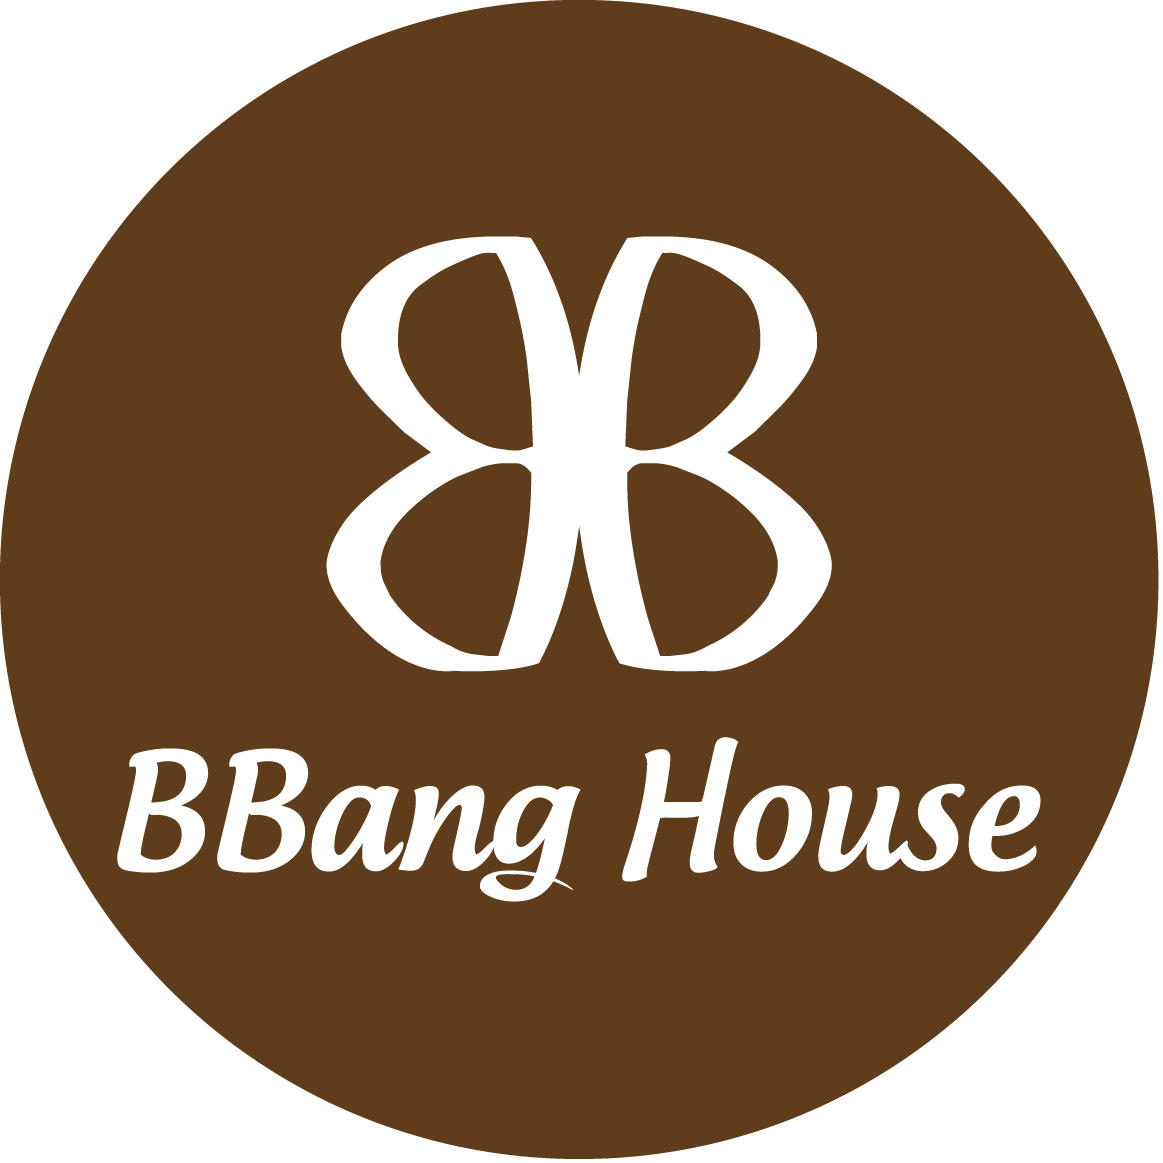 BBang House - Tiệm Bánh & Cafe